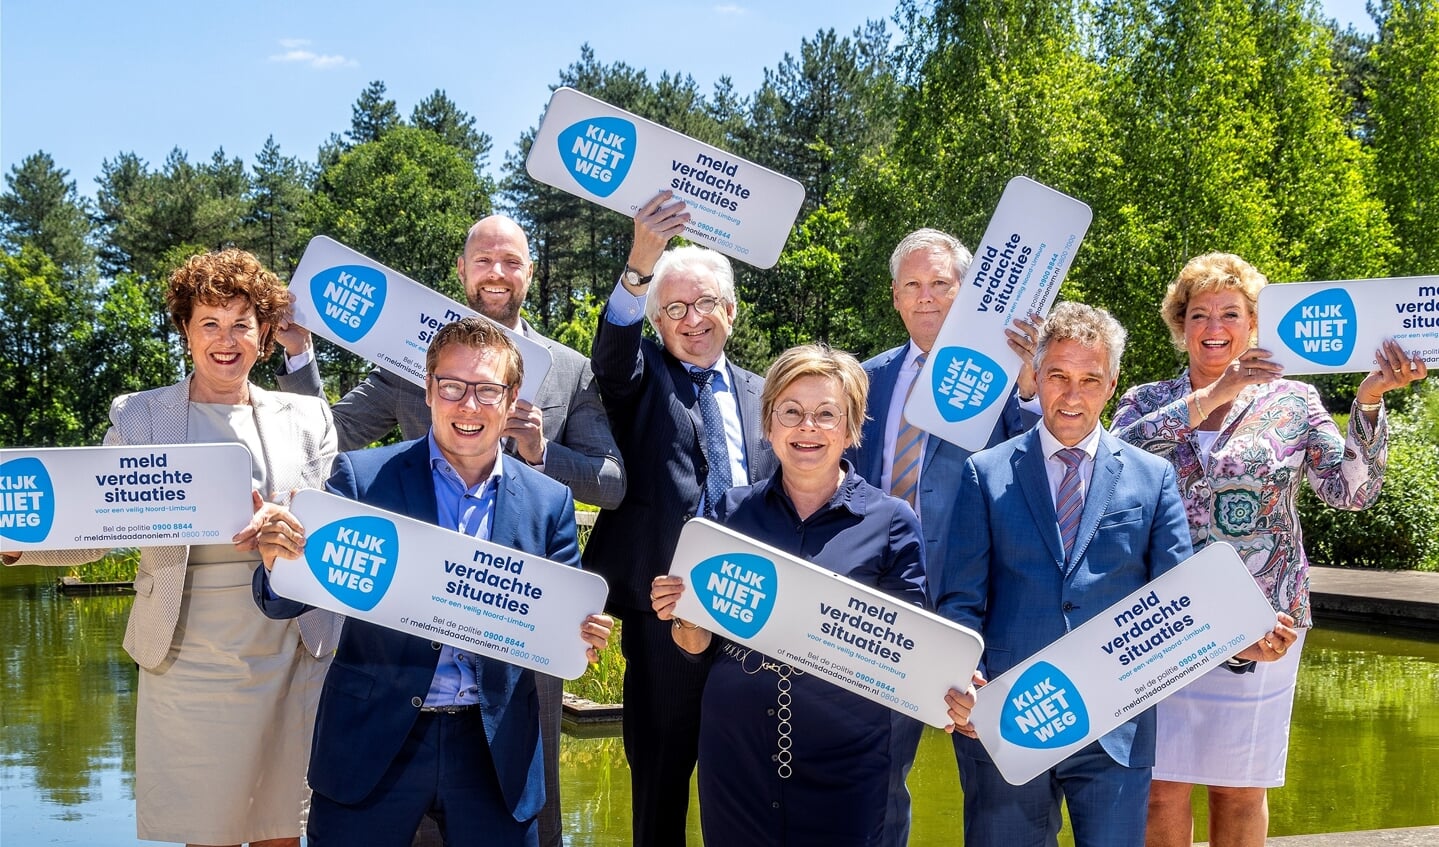 Acht Noord-Limburgse burgemeesters gaven het startsein voor de campagne Kijk Niet Weg!.